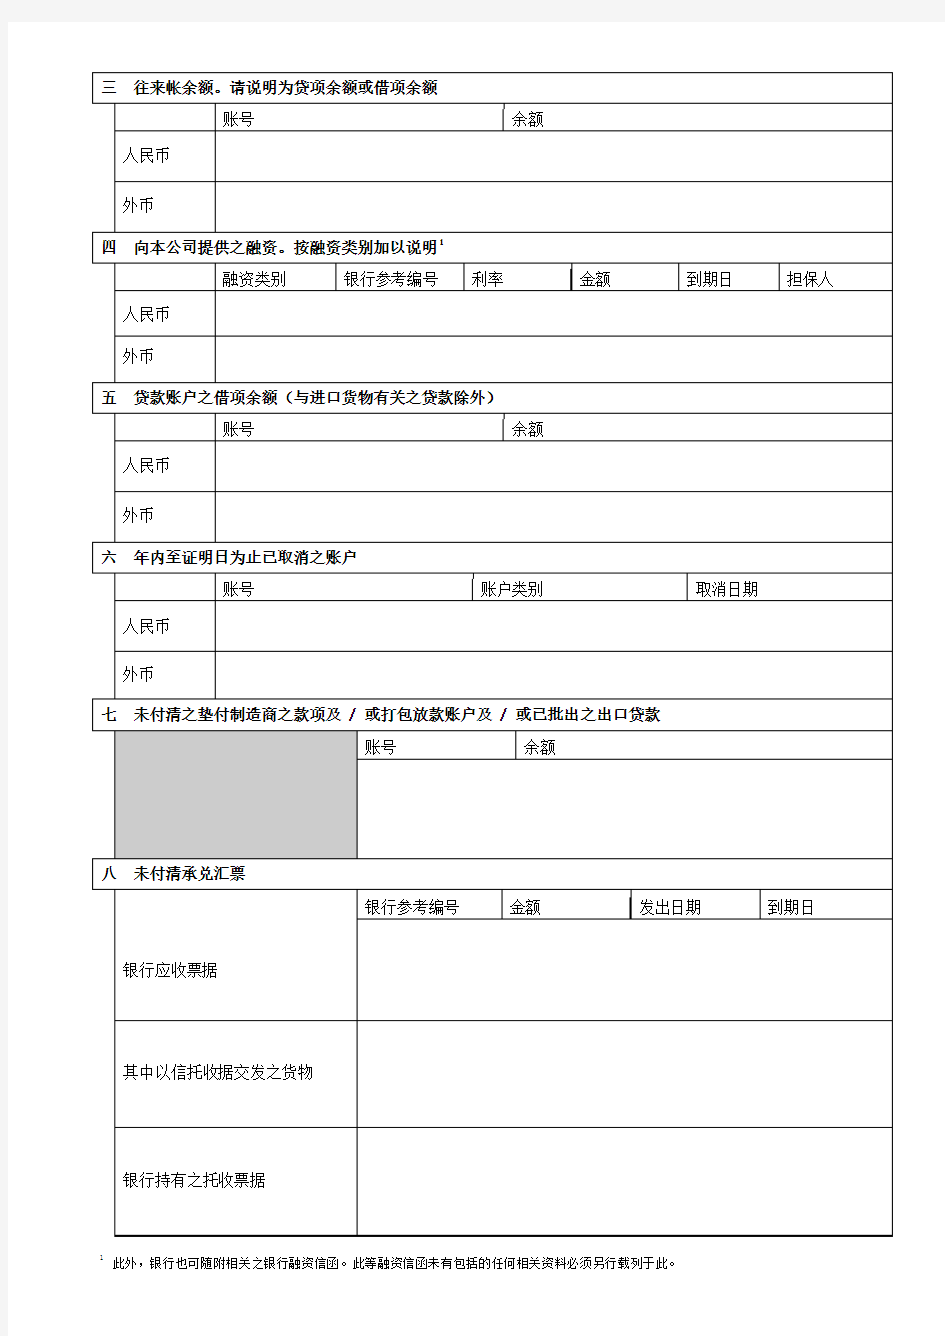 香港公司审计银行询证函-Bank-Confirmation-香港会计师事务所需要-中文翻译版本加英文原版